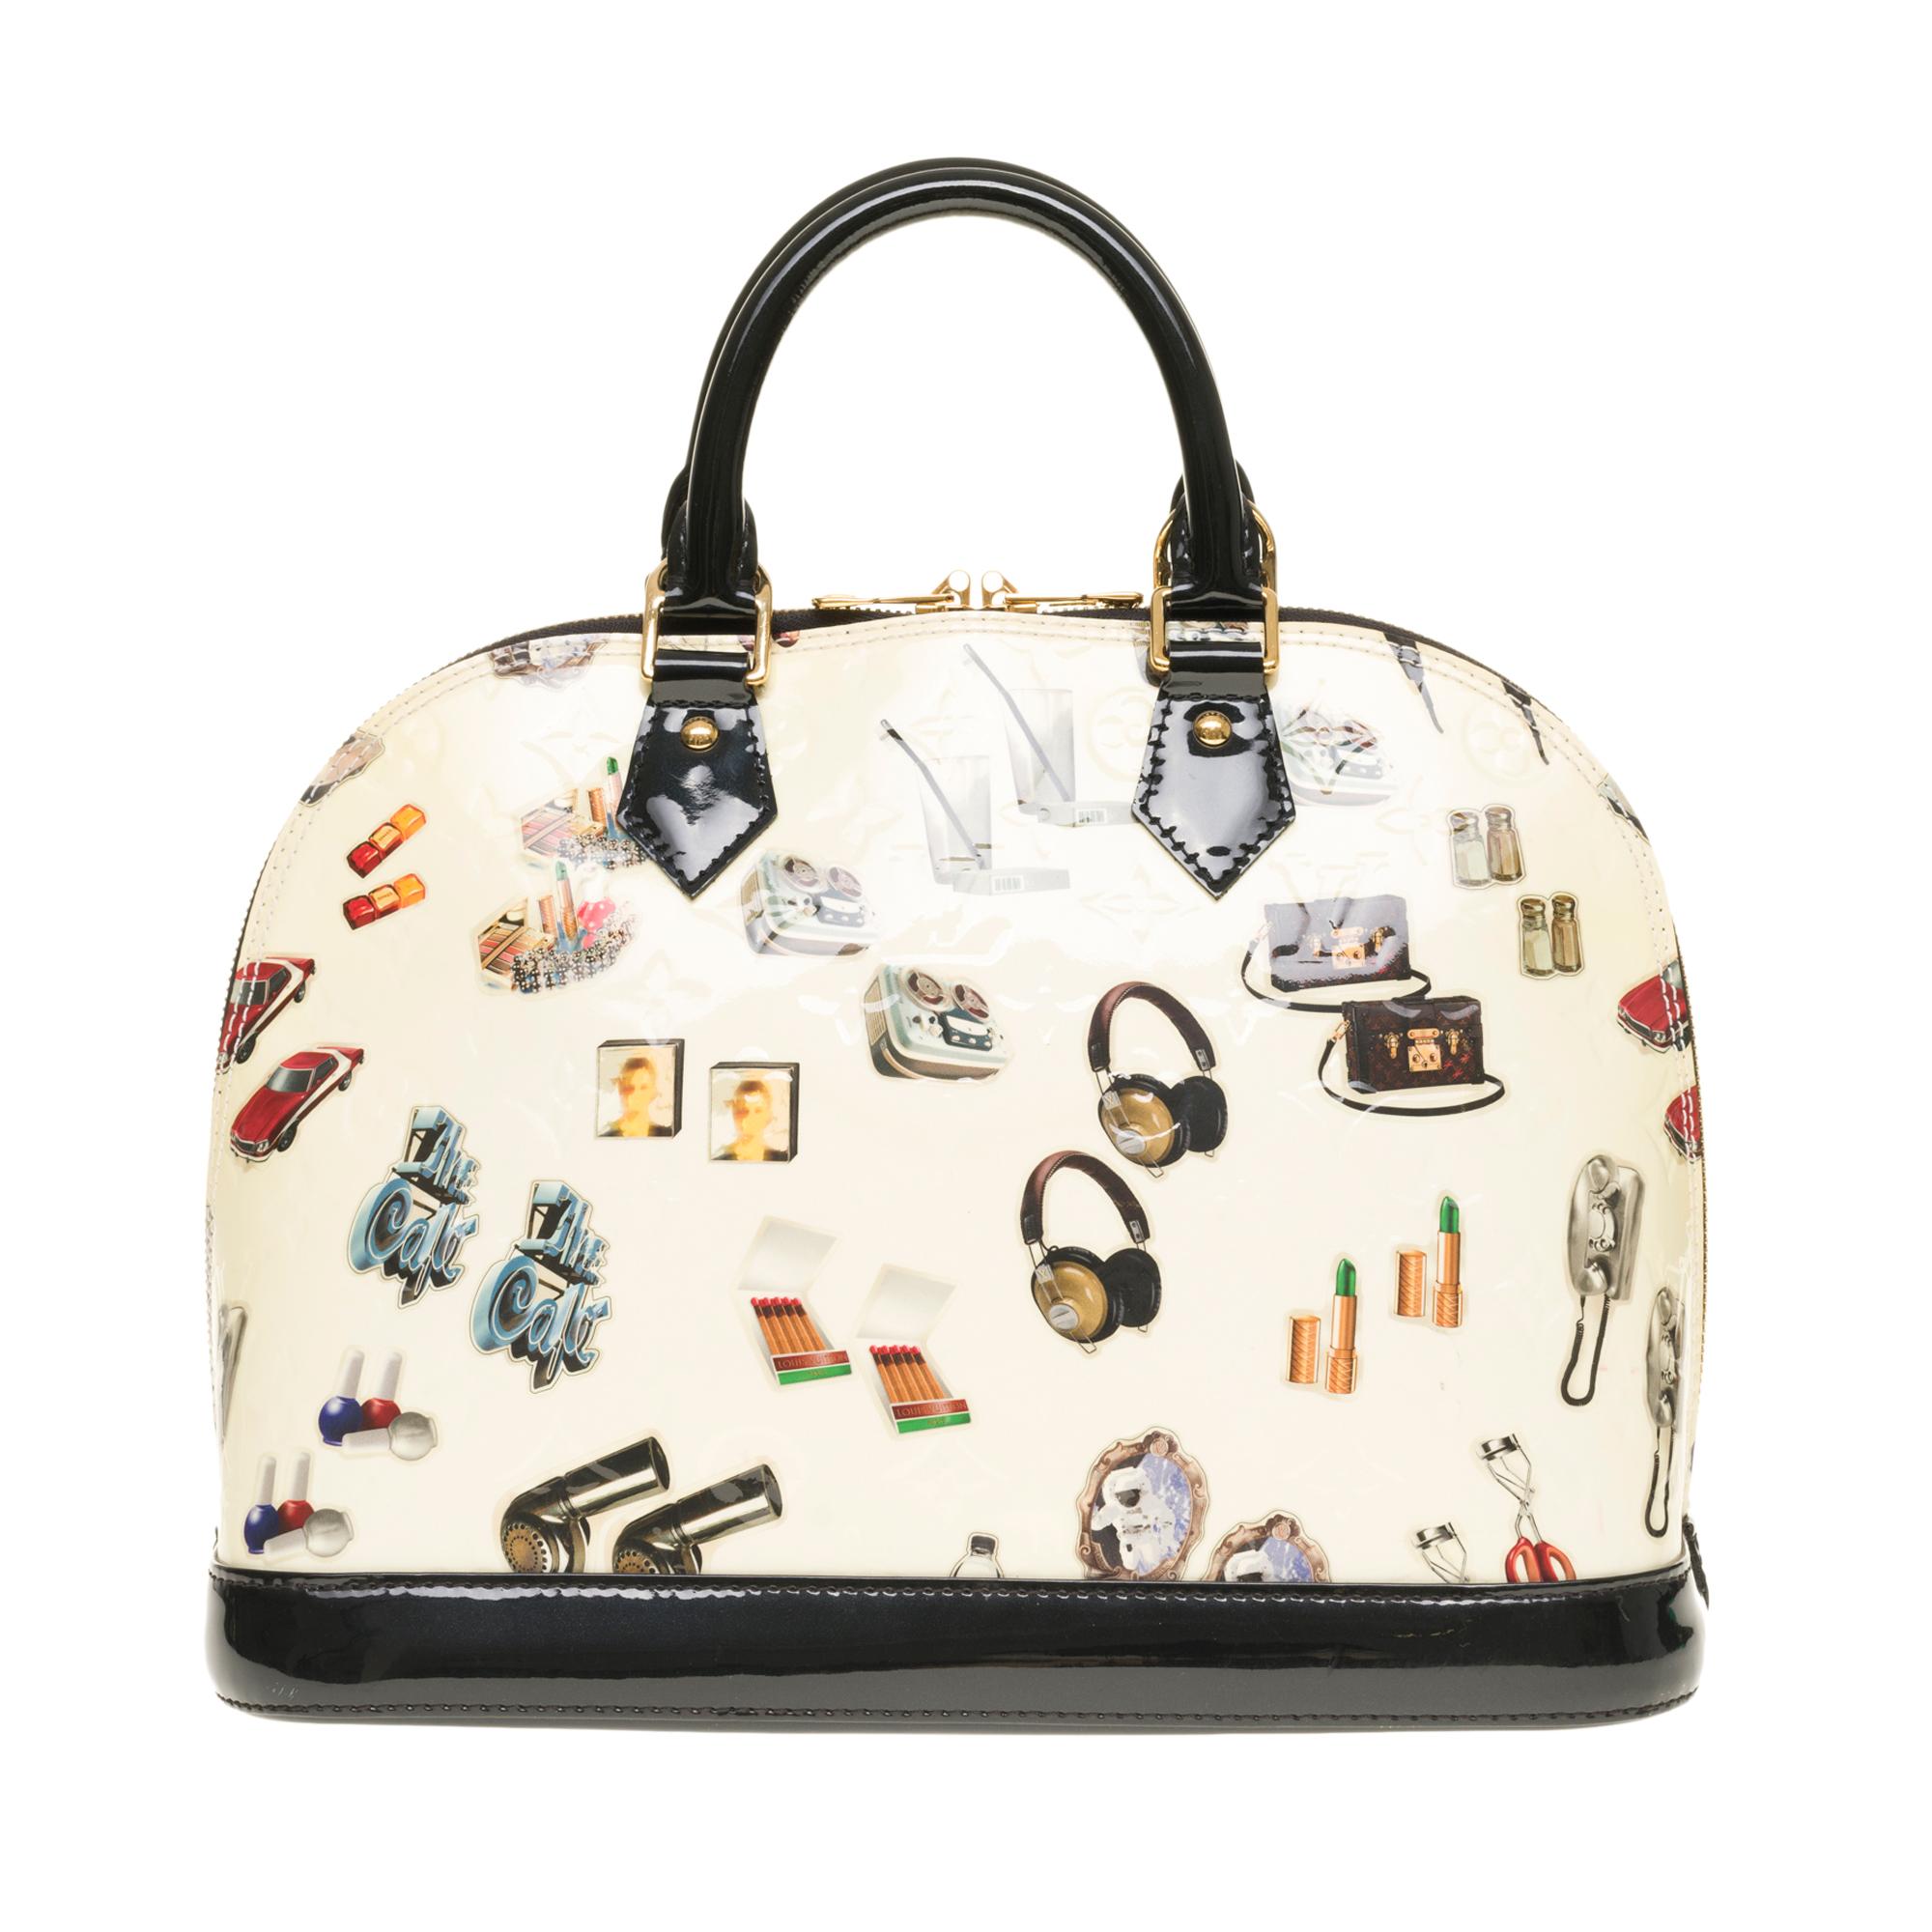 Collector's Handtasche der Nicolas Ghesquière Collection'S - Jahr 2015

Louis Vuitton Alma limitierte Auflage 